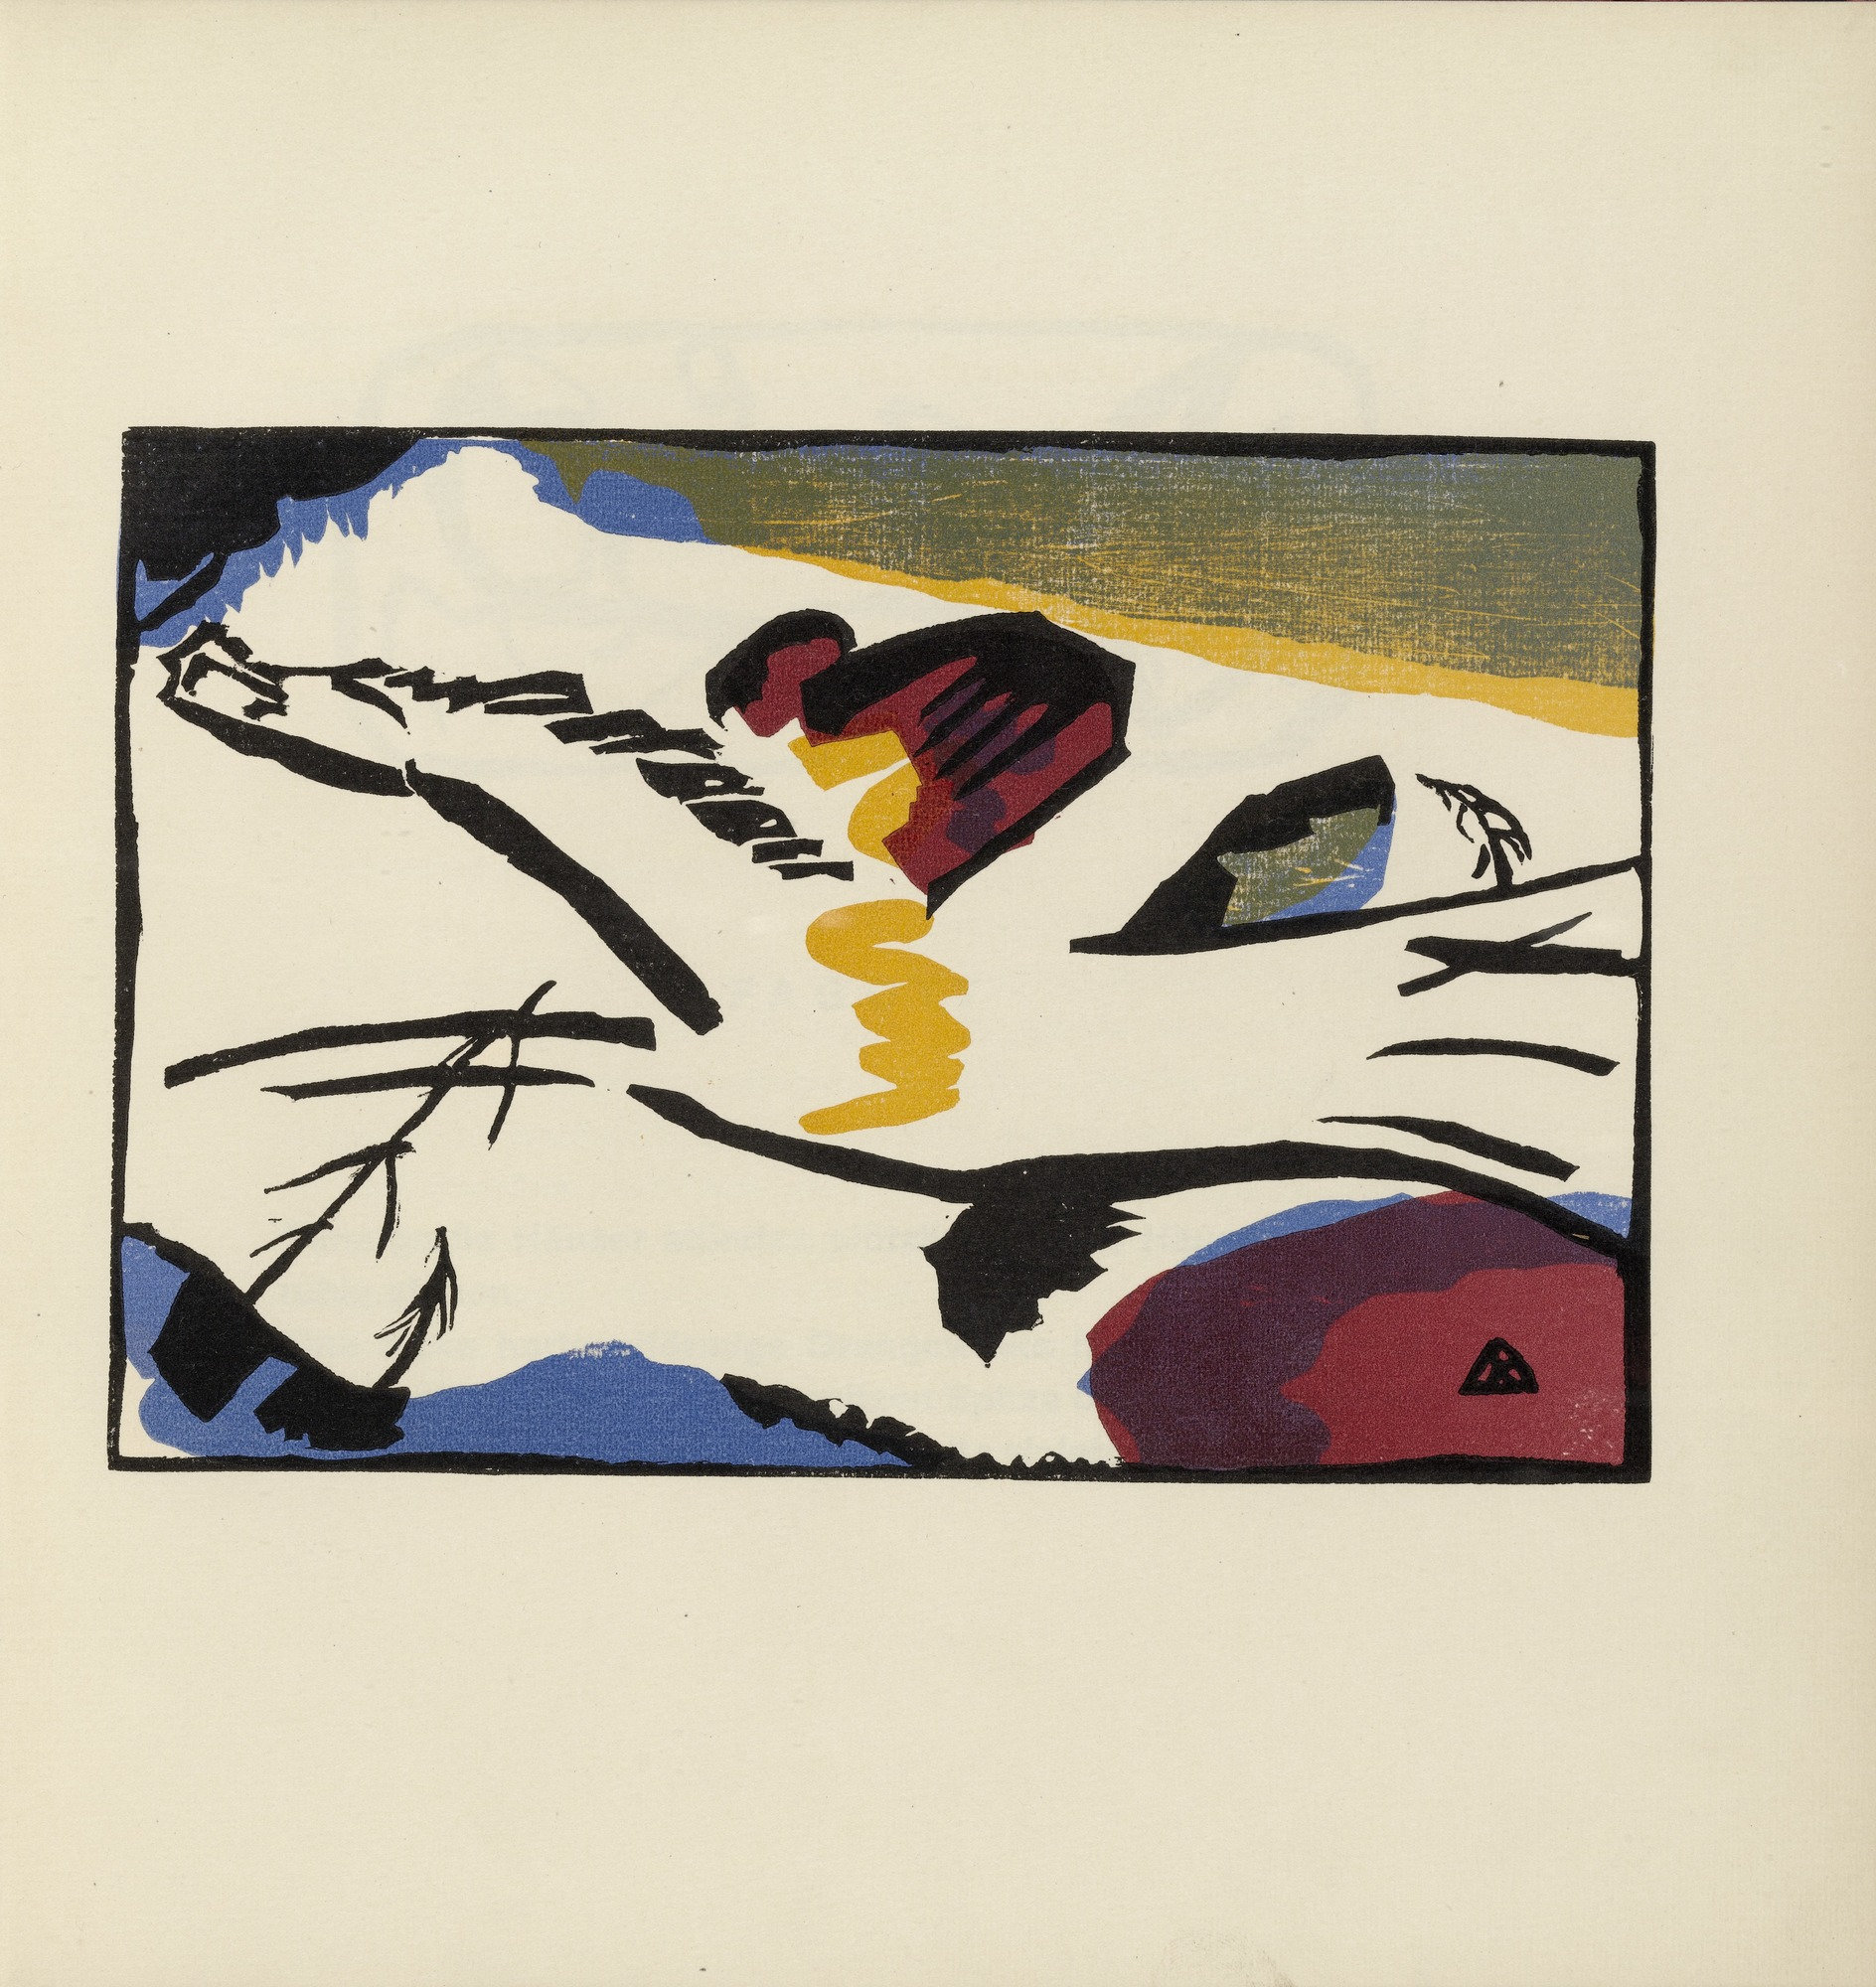 Vasily Kandinsky, “Lyrisches“ from Klänge (1913)